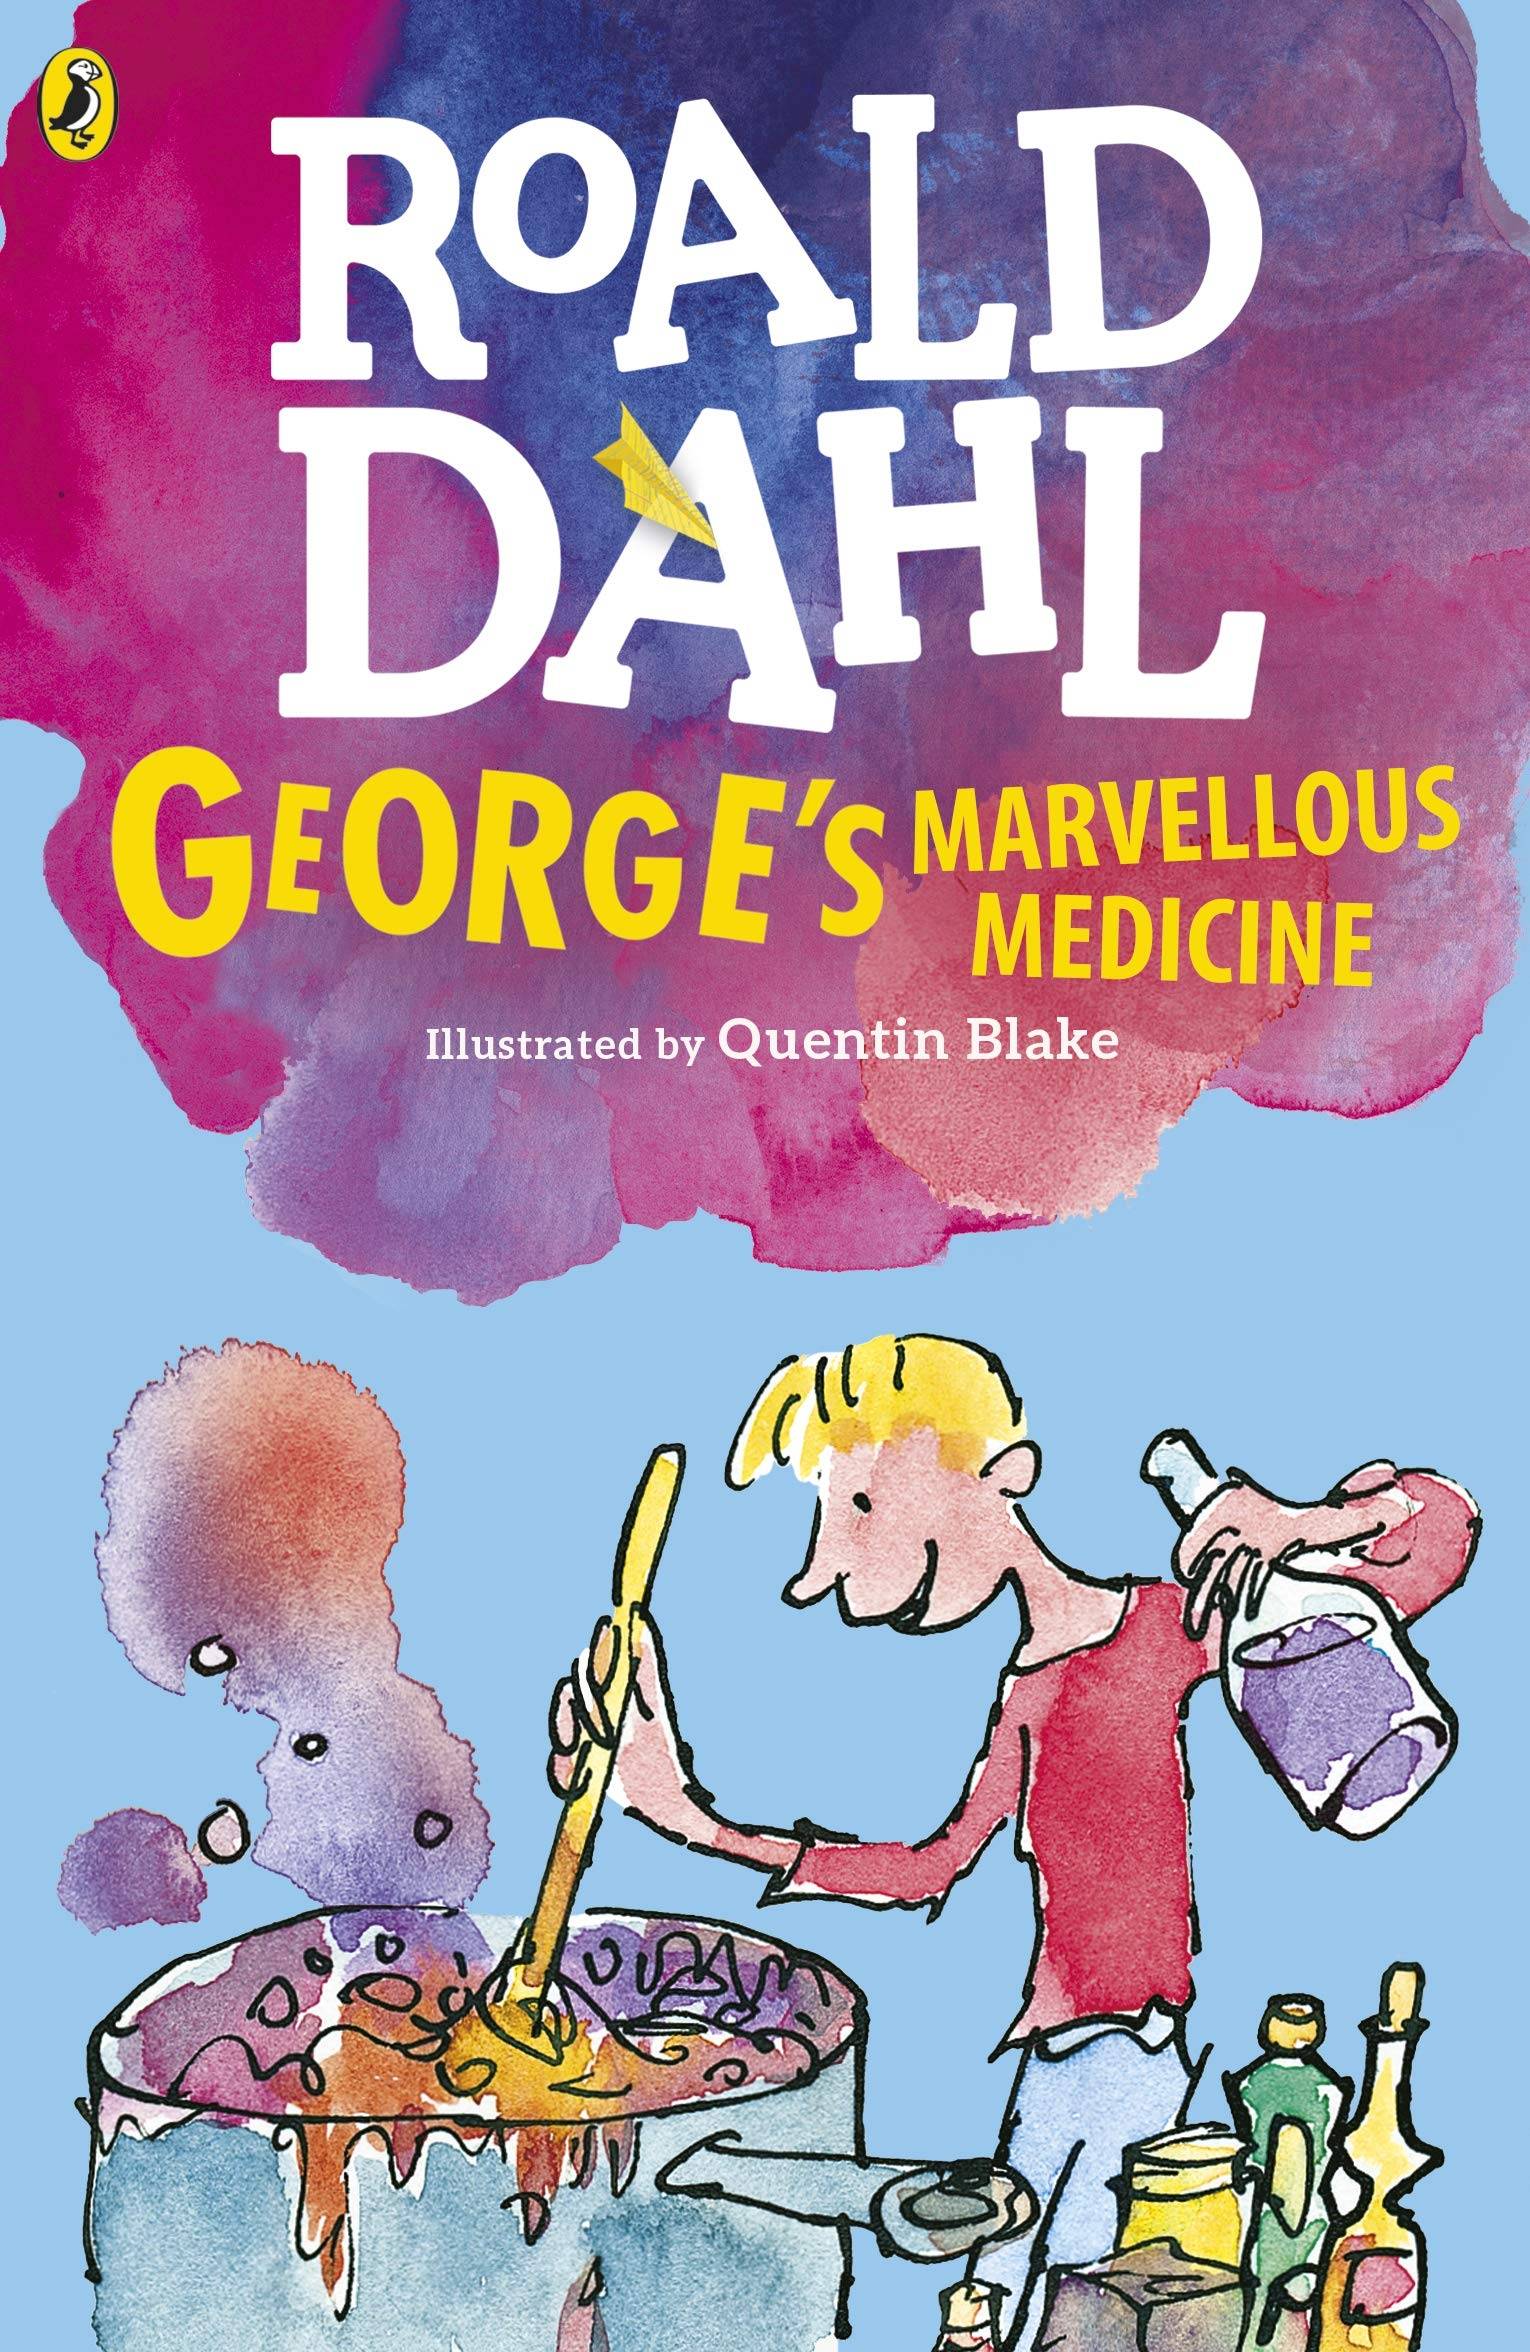 IMG : George's Marvellous Medicine